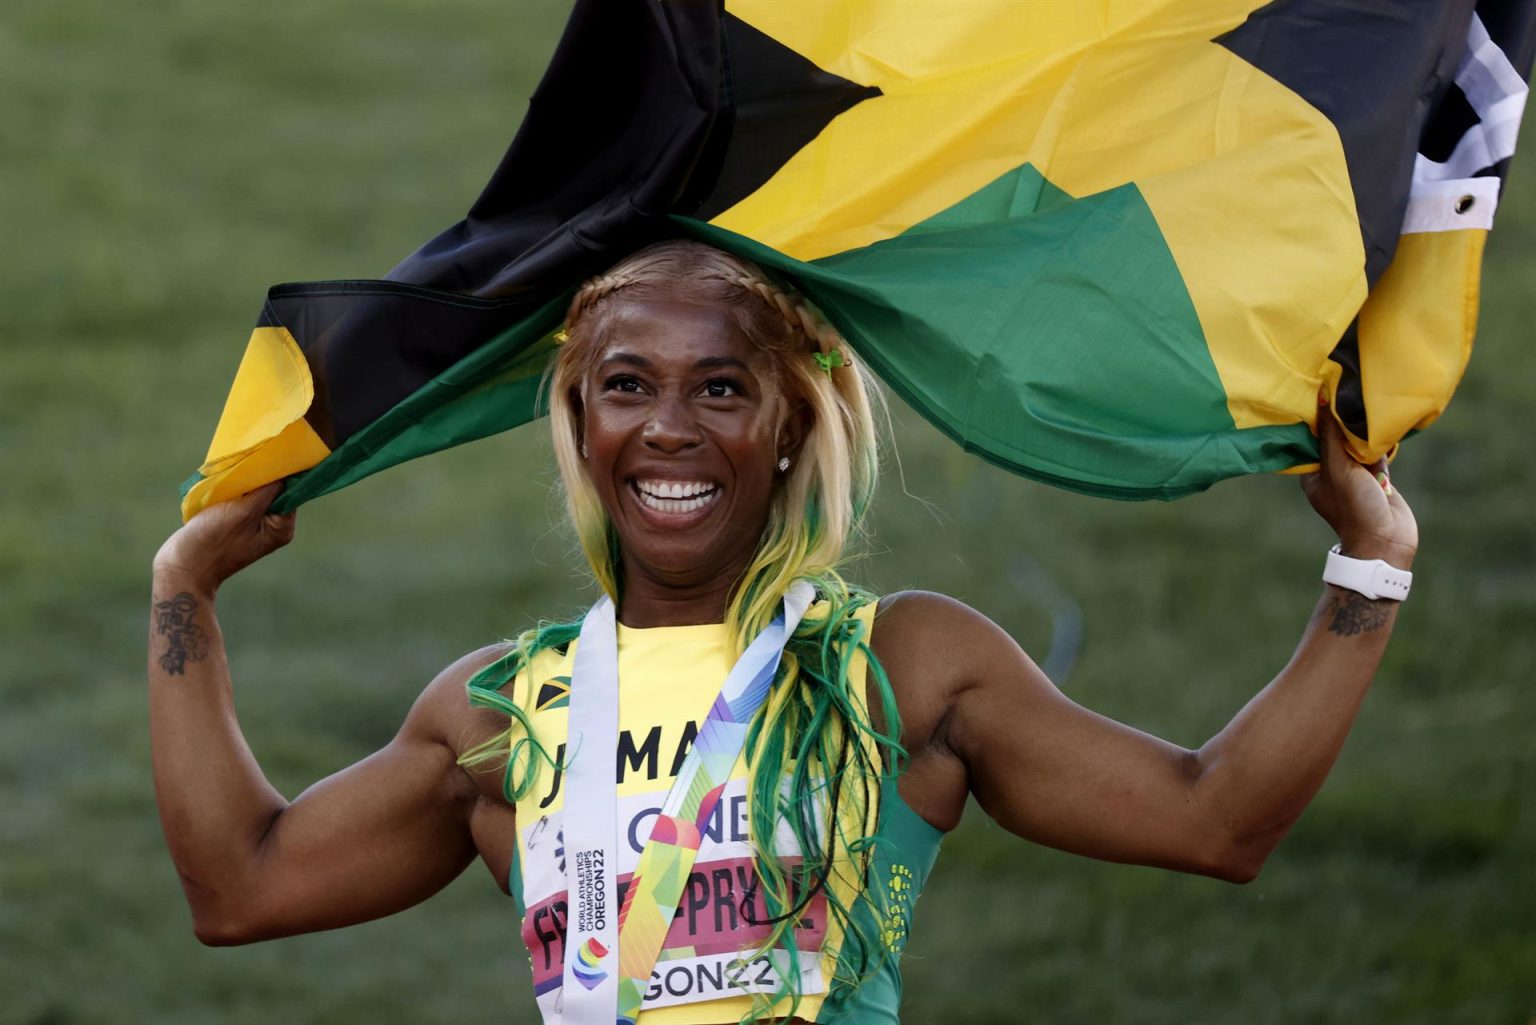 La jamaiquina Shelly-Ann Fraser-Pryce celebra al ganar oro en 100m femenino hoy, en los Campeonatos mundiales de atletismo que se realizan en Hayward Field en Eugene (EE.UU.). EFE/ Kai Forsterling